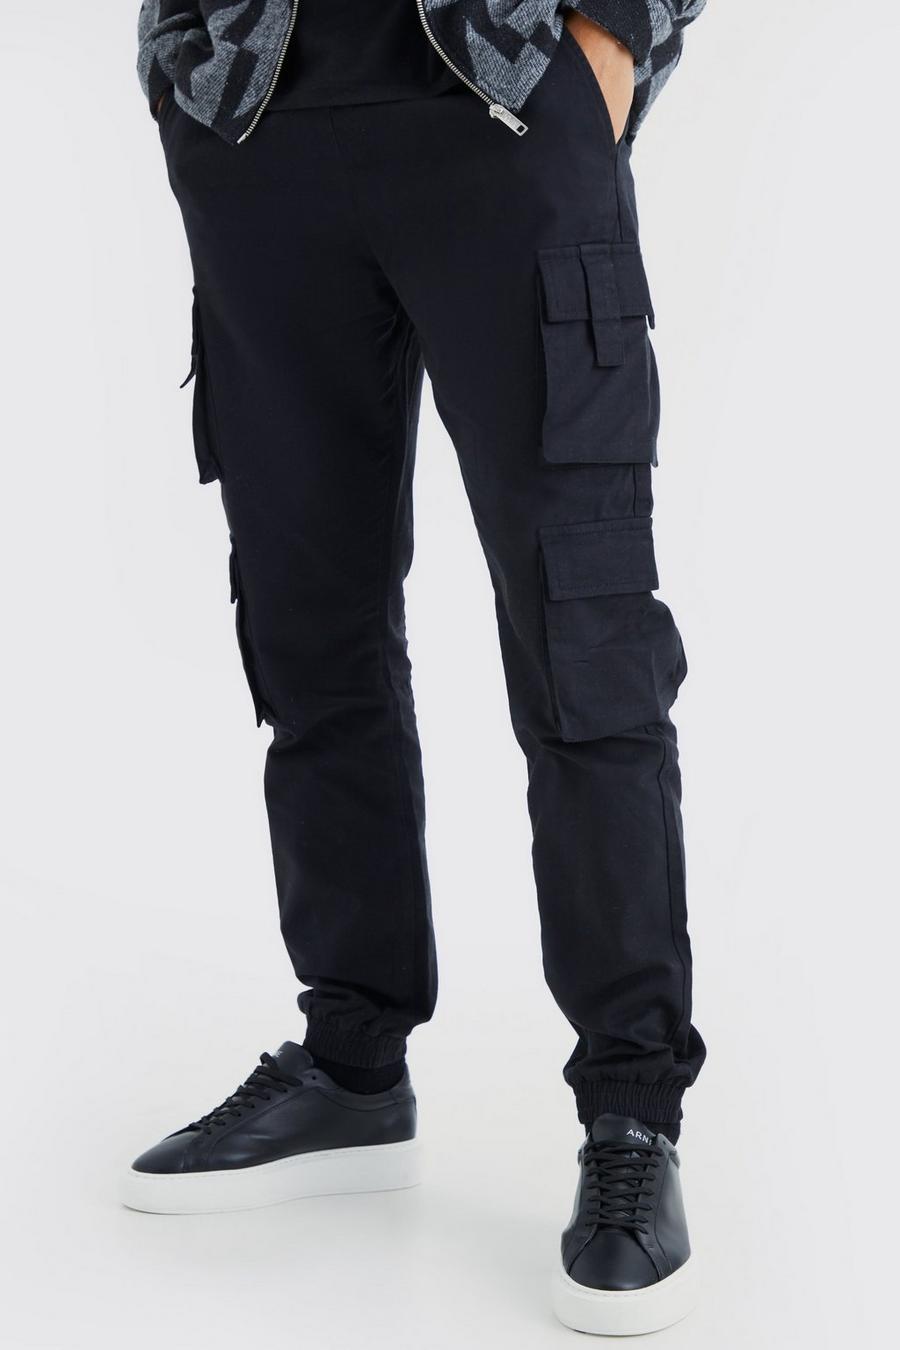 Pantaloni tuta Tall Slim Fit con tasche Cargo e vita elasticizzata, Black